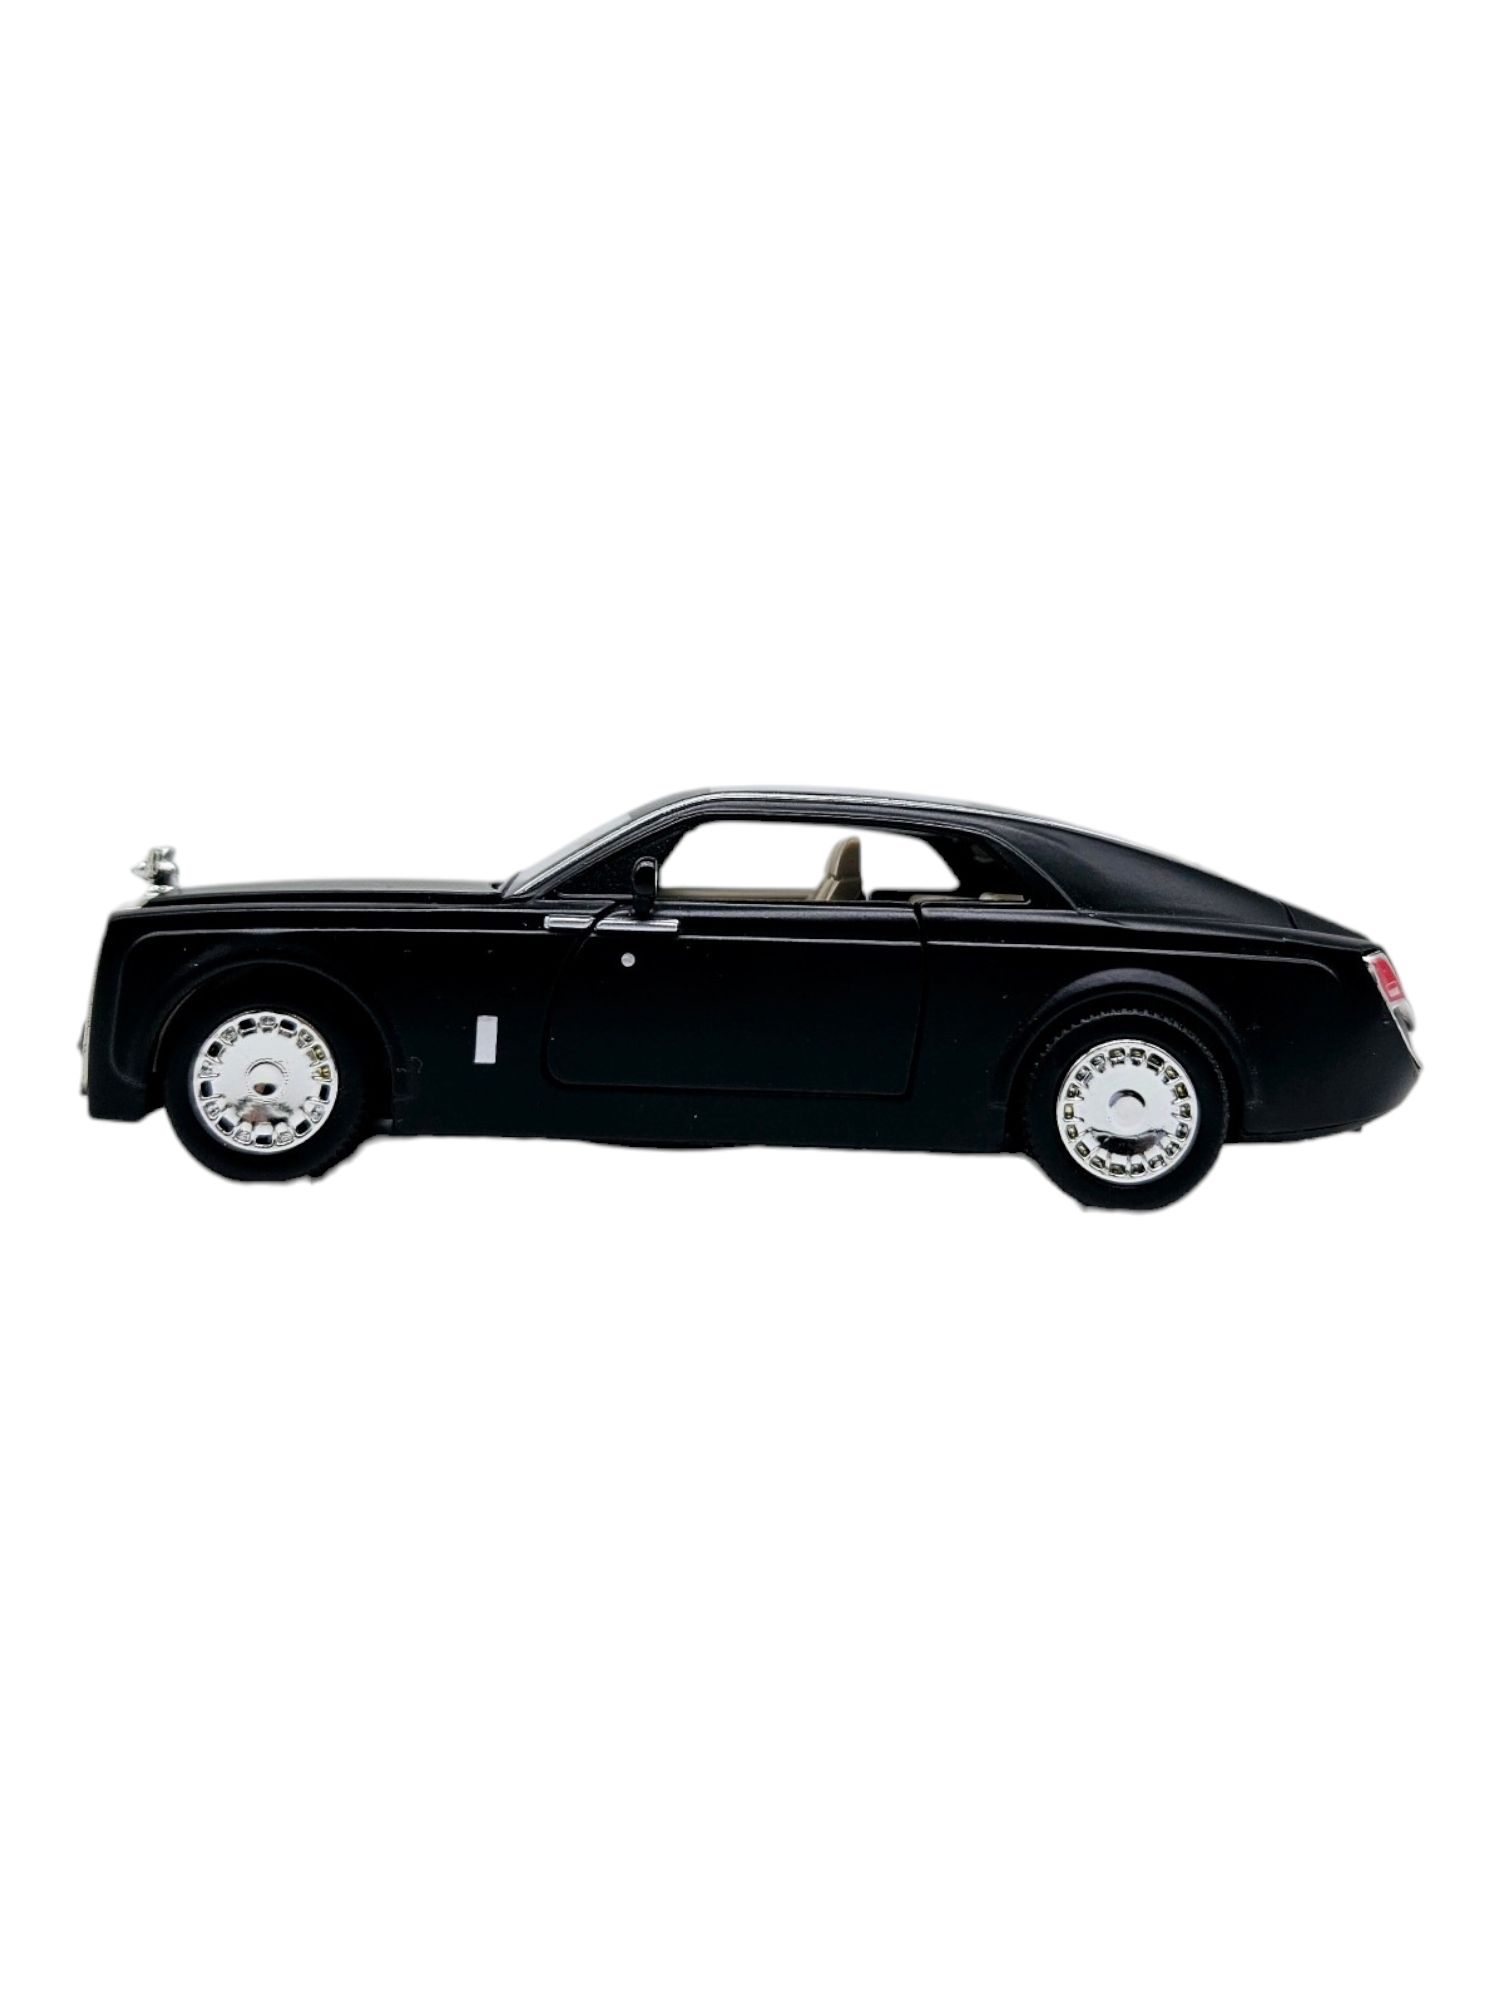 Masinuta metalica Rolls Royce, Sunete si lumini Negru, 13cm